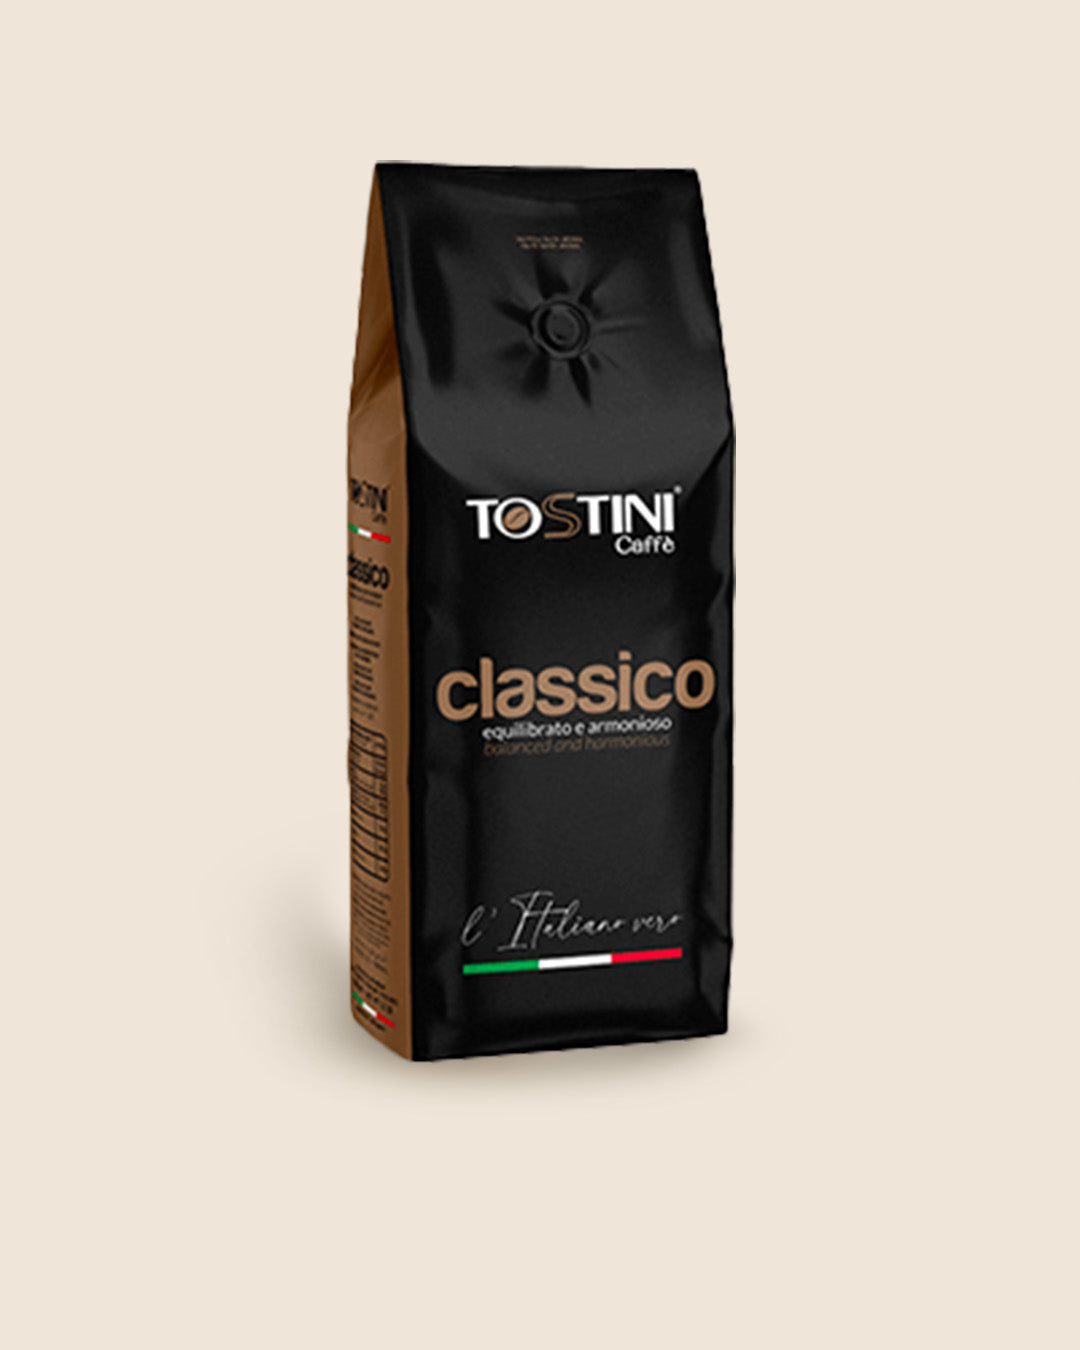 Tostini Classico Whole Bean 2.2 lb